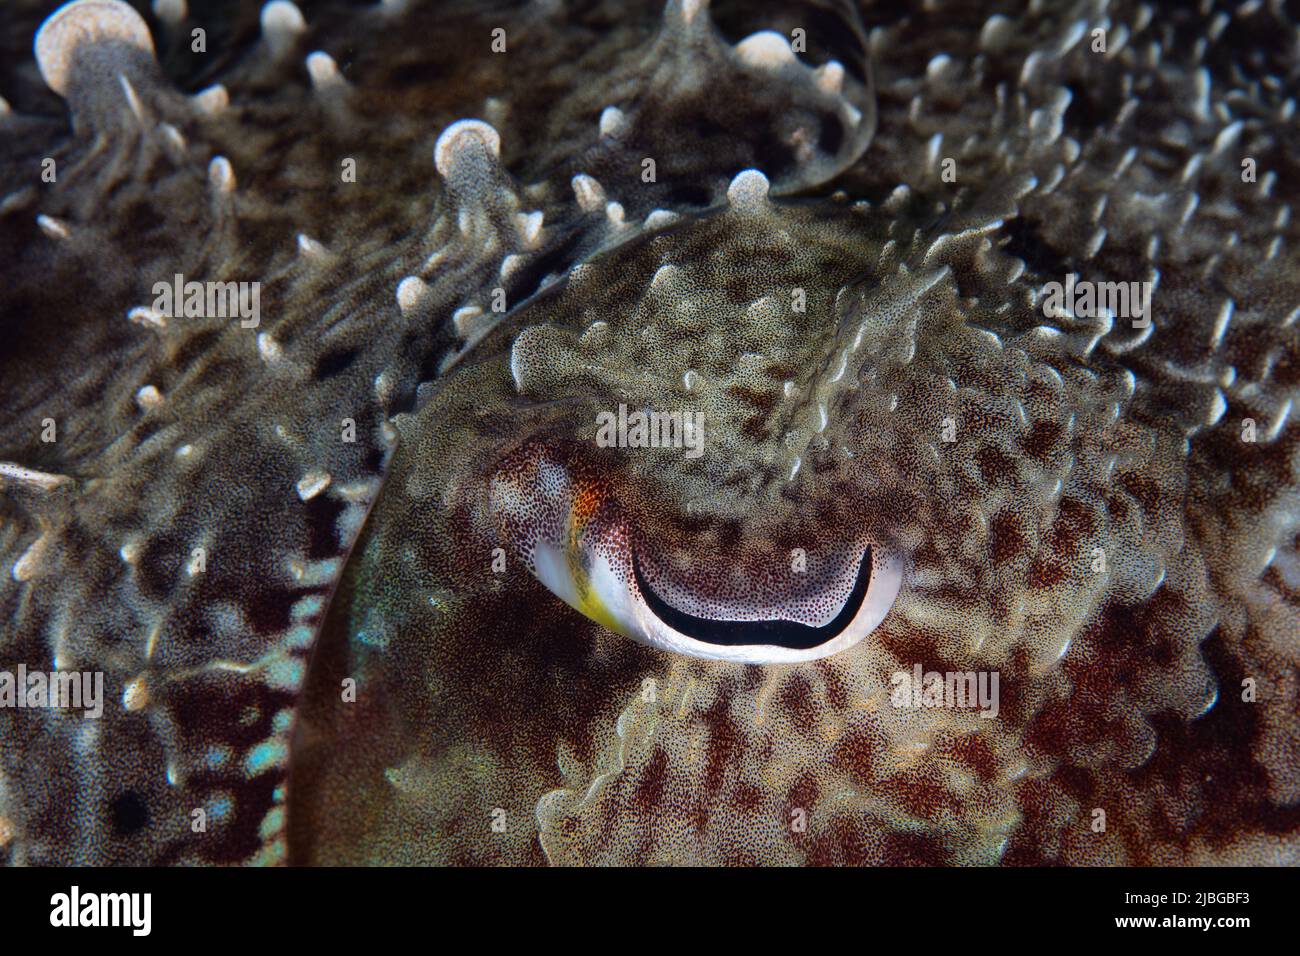 Detail des Auges und texturierte Epidermis eines Broadclub-Tintenfischs, Sepia latimanus, auf einem Korallenriff in Indonesien. Diese Tiere sind gut getarnt. Stockfoto